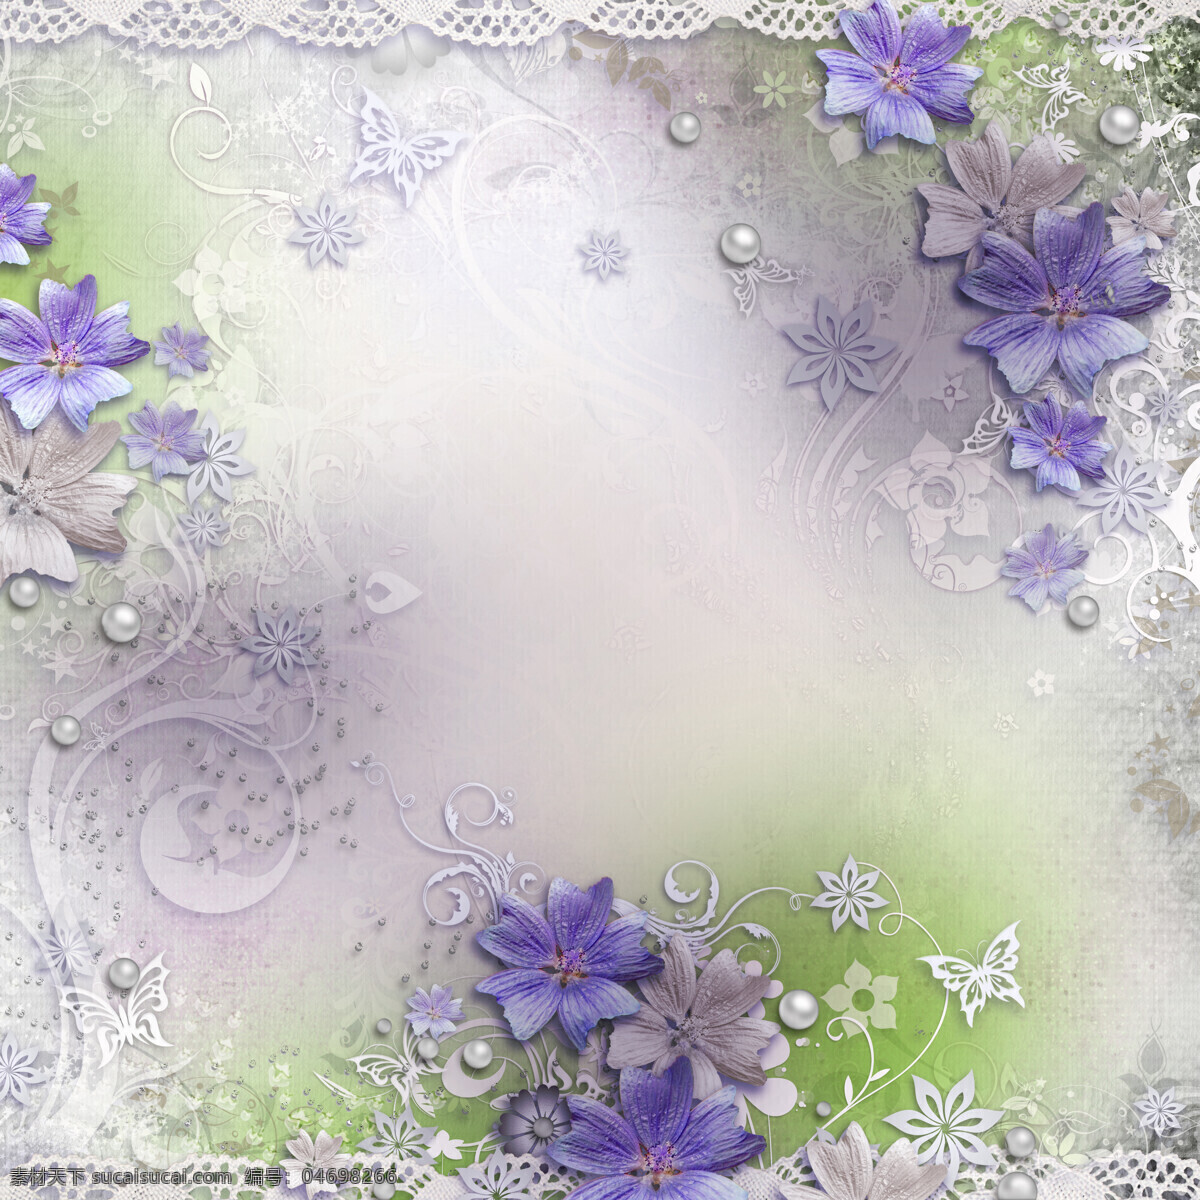 紫色花朵 鲜花 边框 蕾丝边框 白色花朵 背景底纹 底纹边框